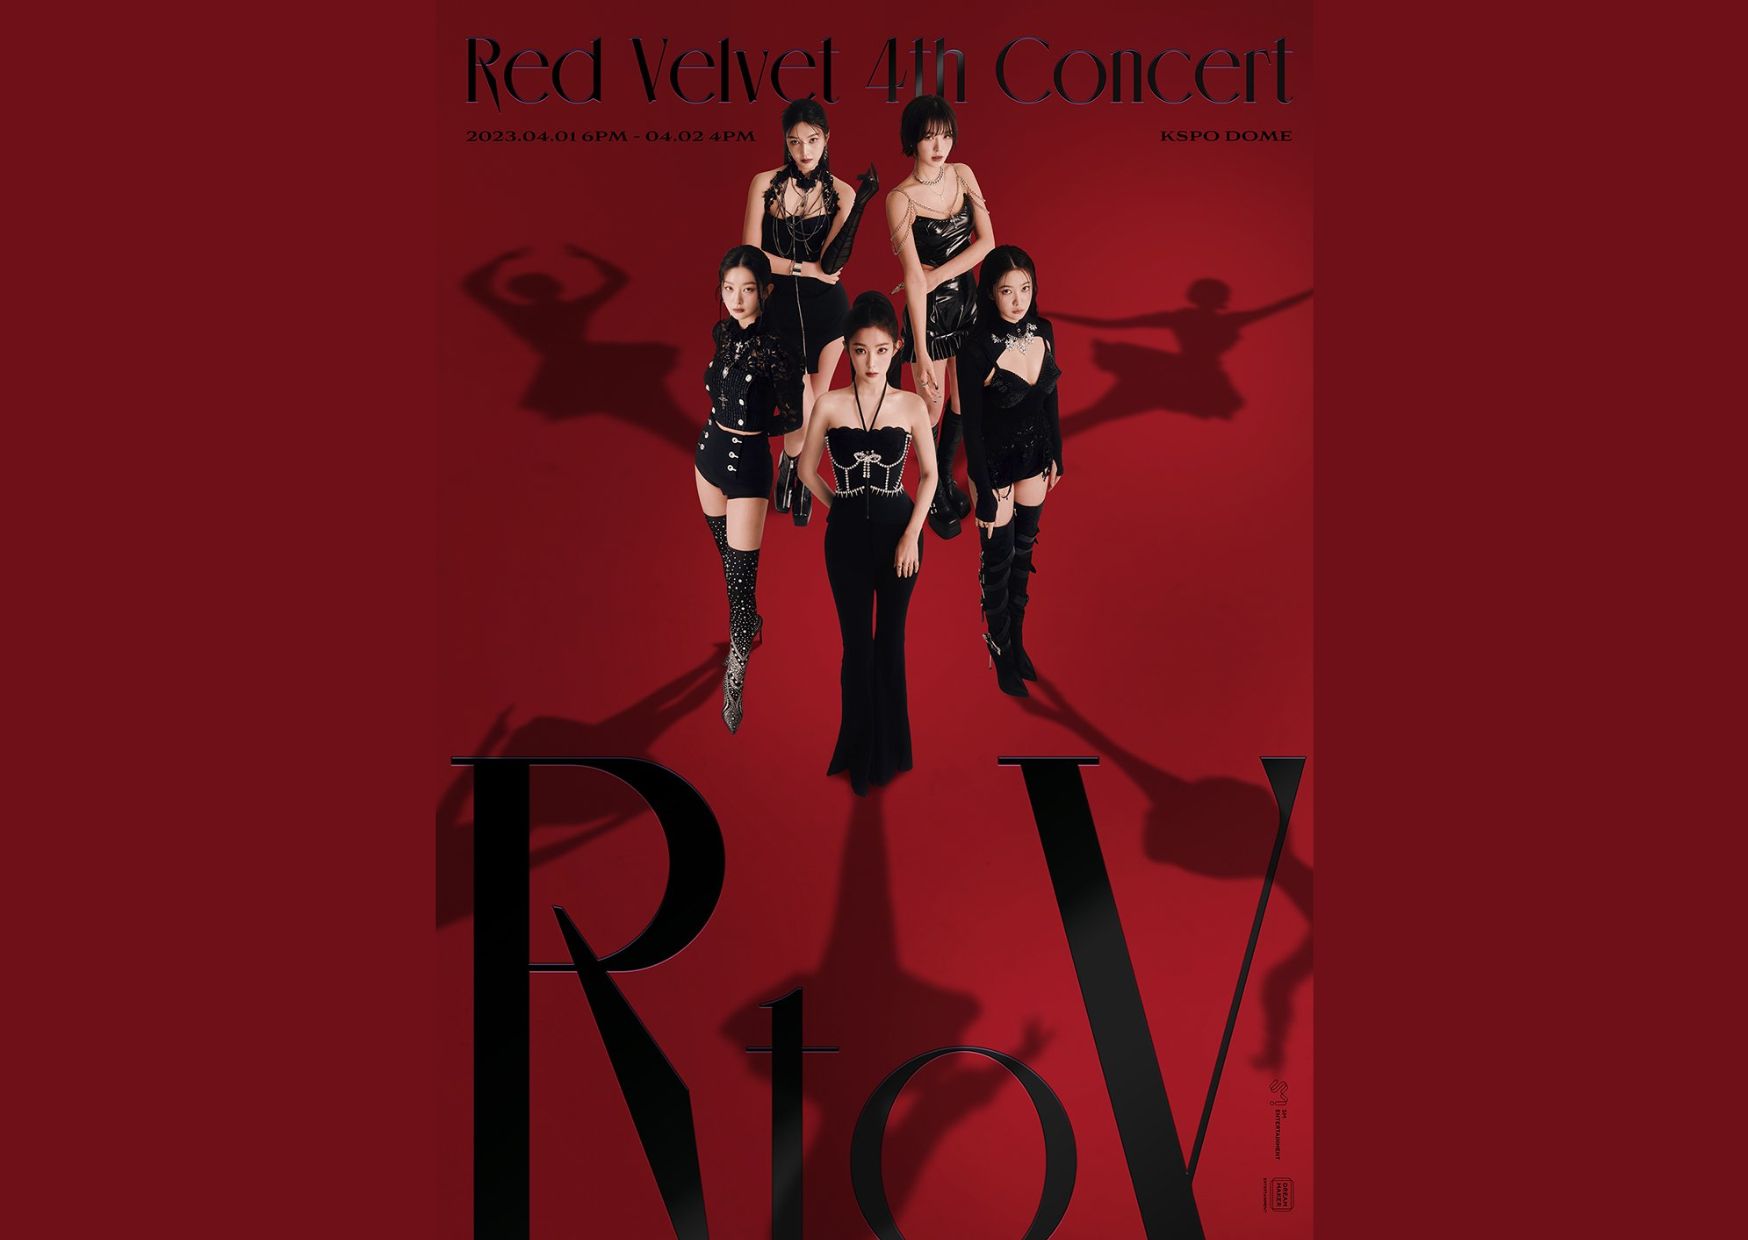 Red Velvet Gelar Konser Pertama Selama Lebih Dari 3 Tahun Di KSPO Dome + Streaming Secara Online